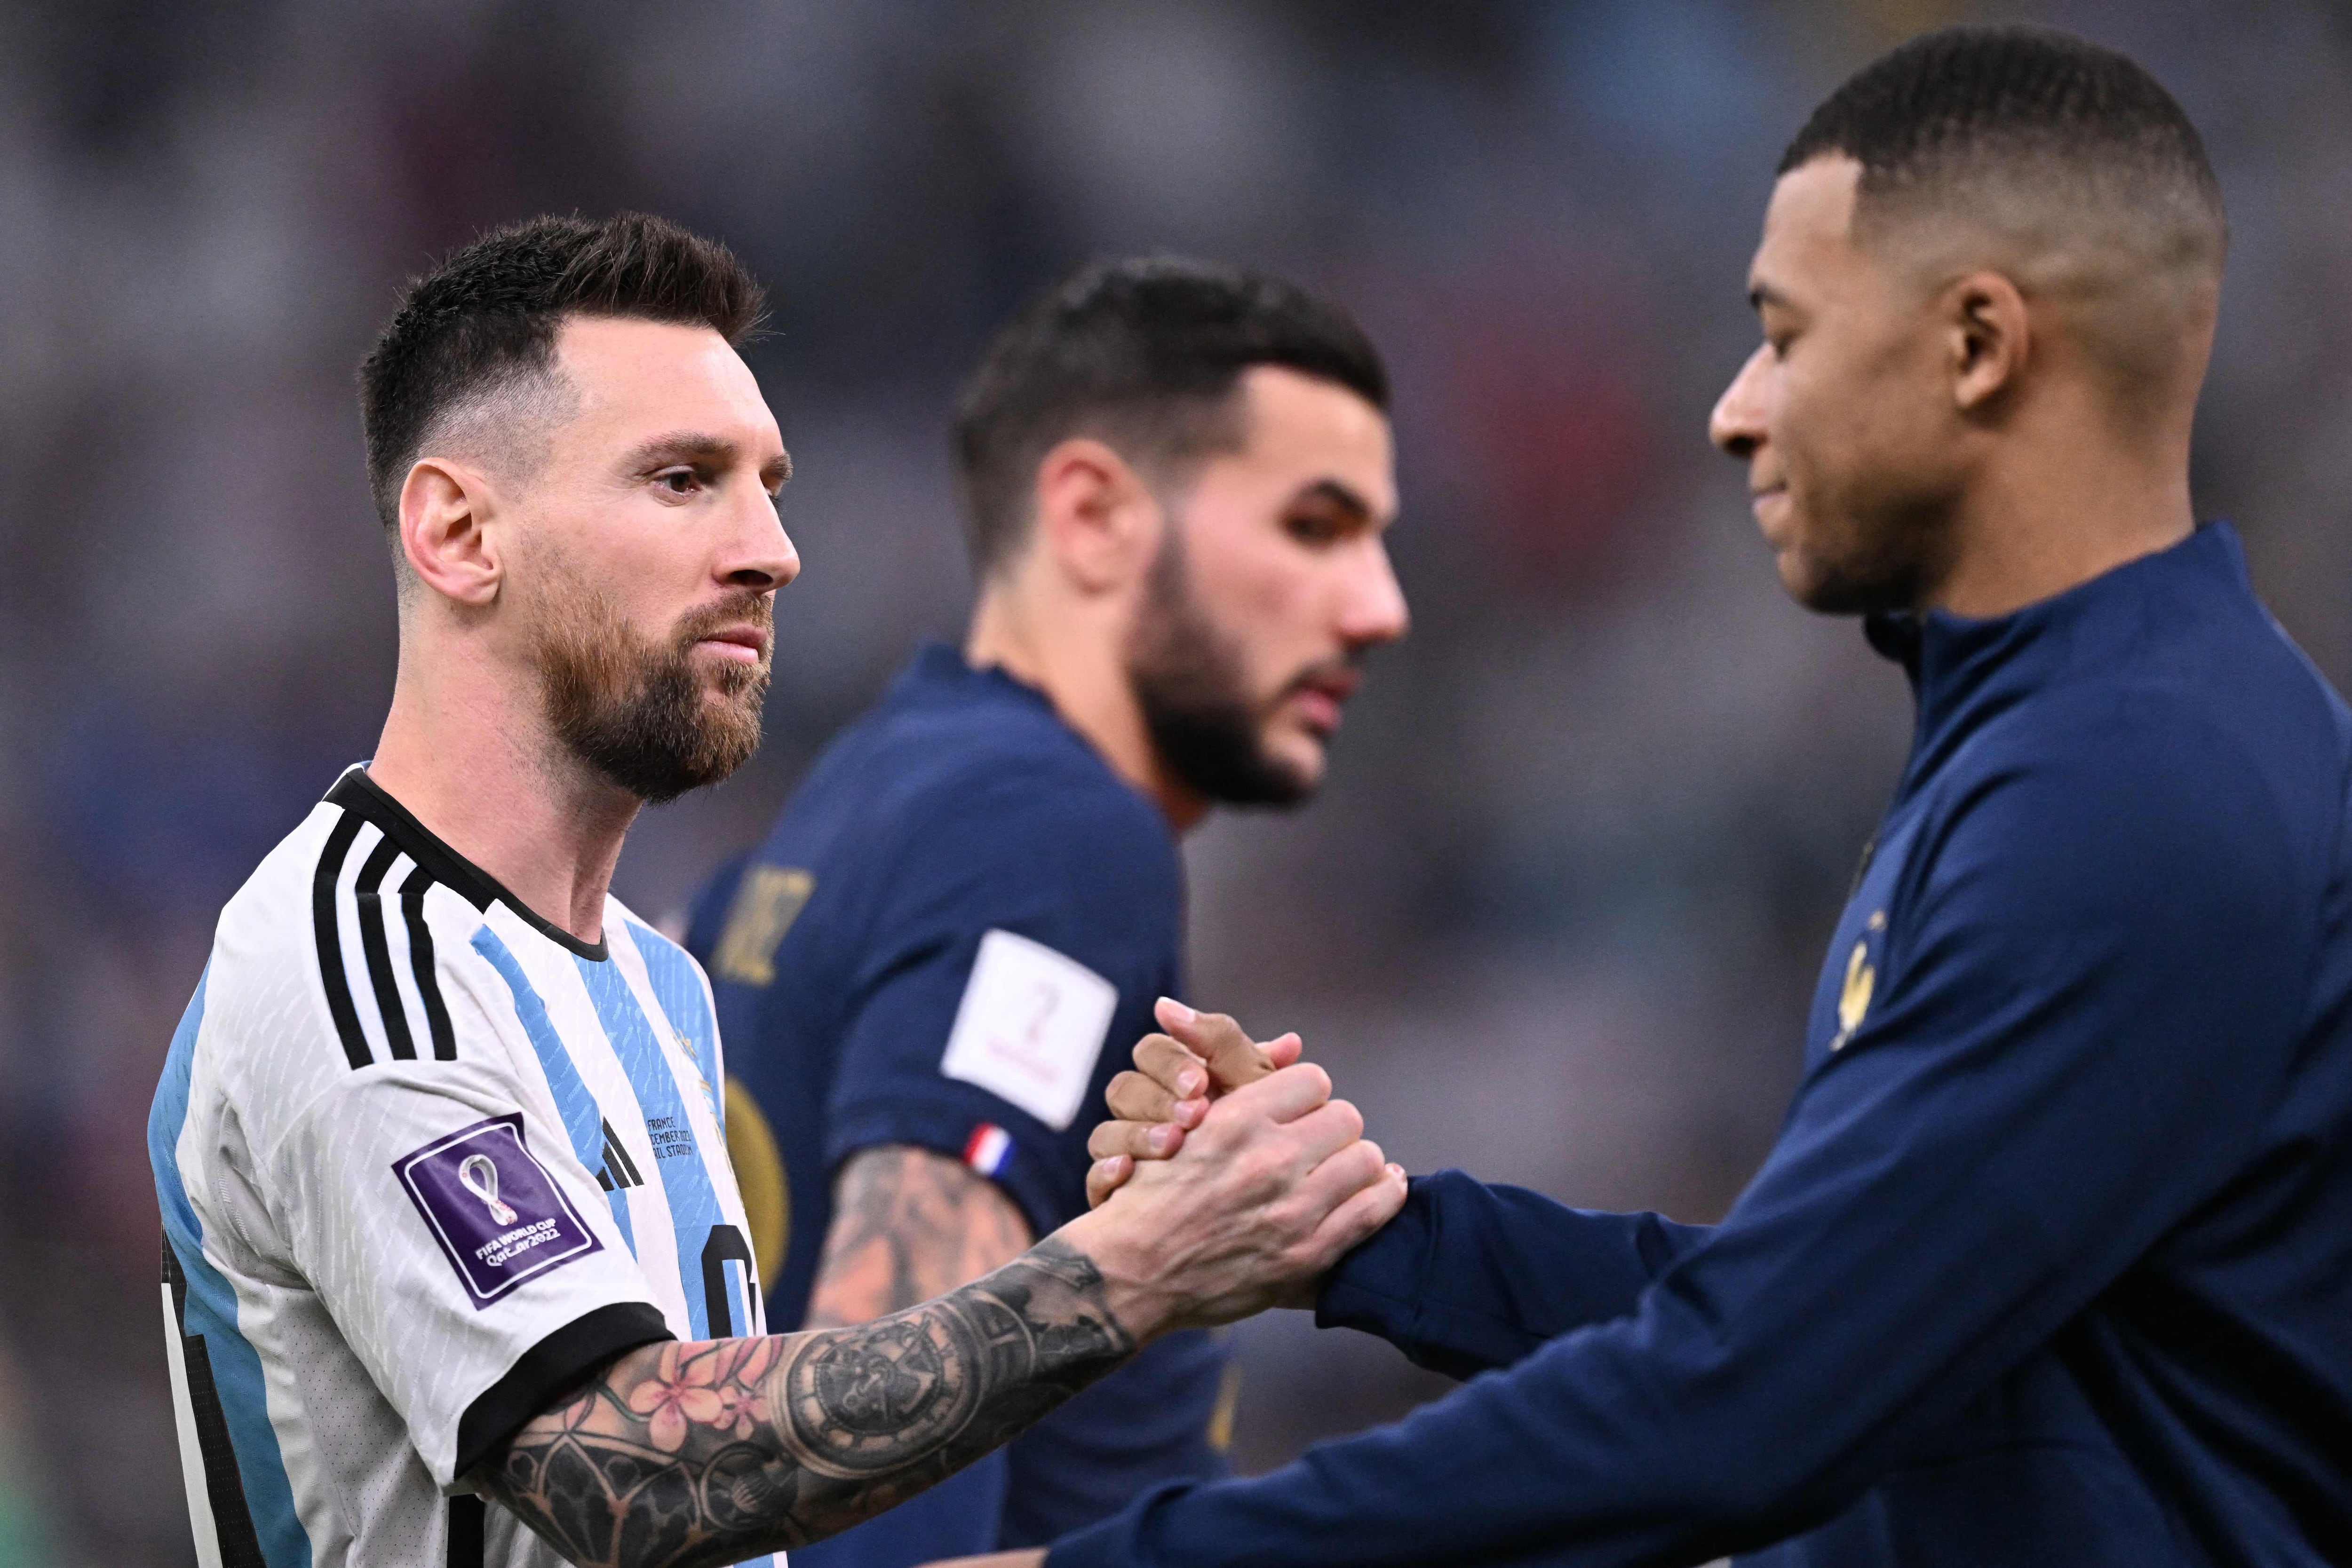 El delantero número 10 de Argentina, Lionel Messi (L), le da la mano al delantero número 10 de Francia, Kylian Mbappe, antes del inicio del partido de fútbol de la final de la Copa Mundial Qatar 2022 entre Argentina y Francia en el Estadio Lusail en Lusail, al norte de Doha, el 18 de diciembre de 2022. 